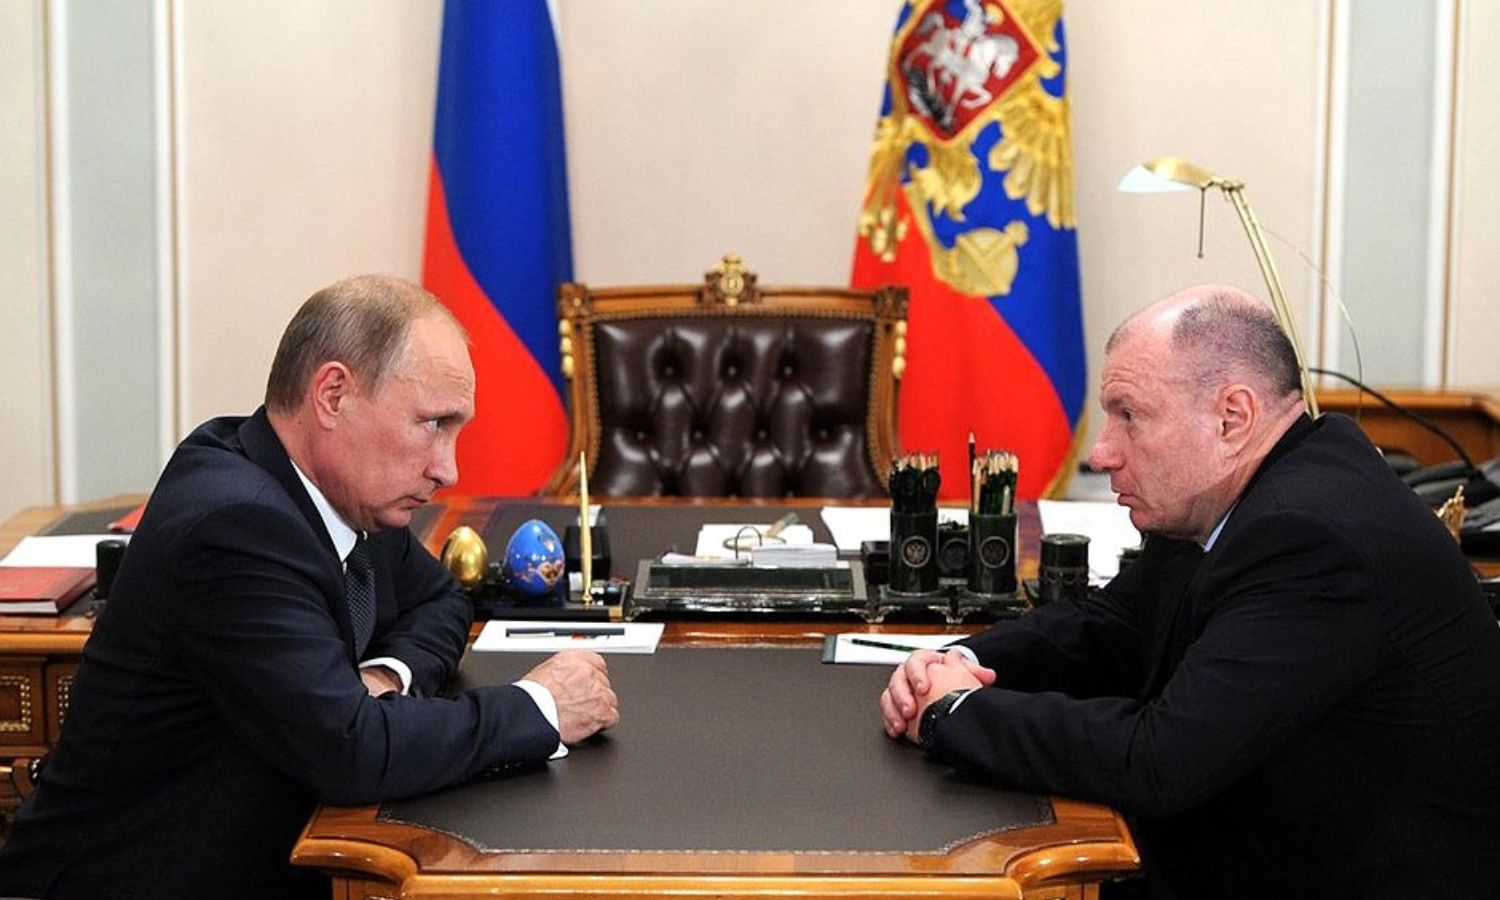 الملياردير الروسي فلاديمير بوتانين في أثناء اجتماع مع الرئيس الروسي، فلاديمير بوتين- 2014 (المكتب الرئاسي الروسي)